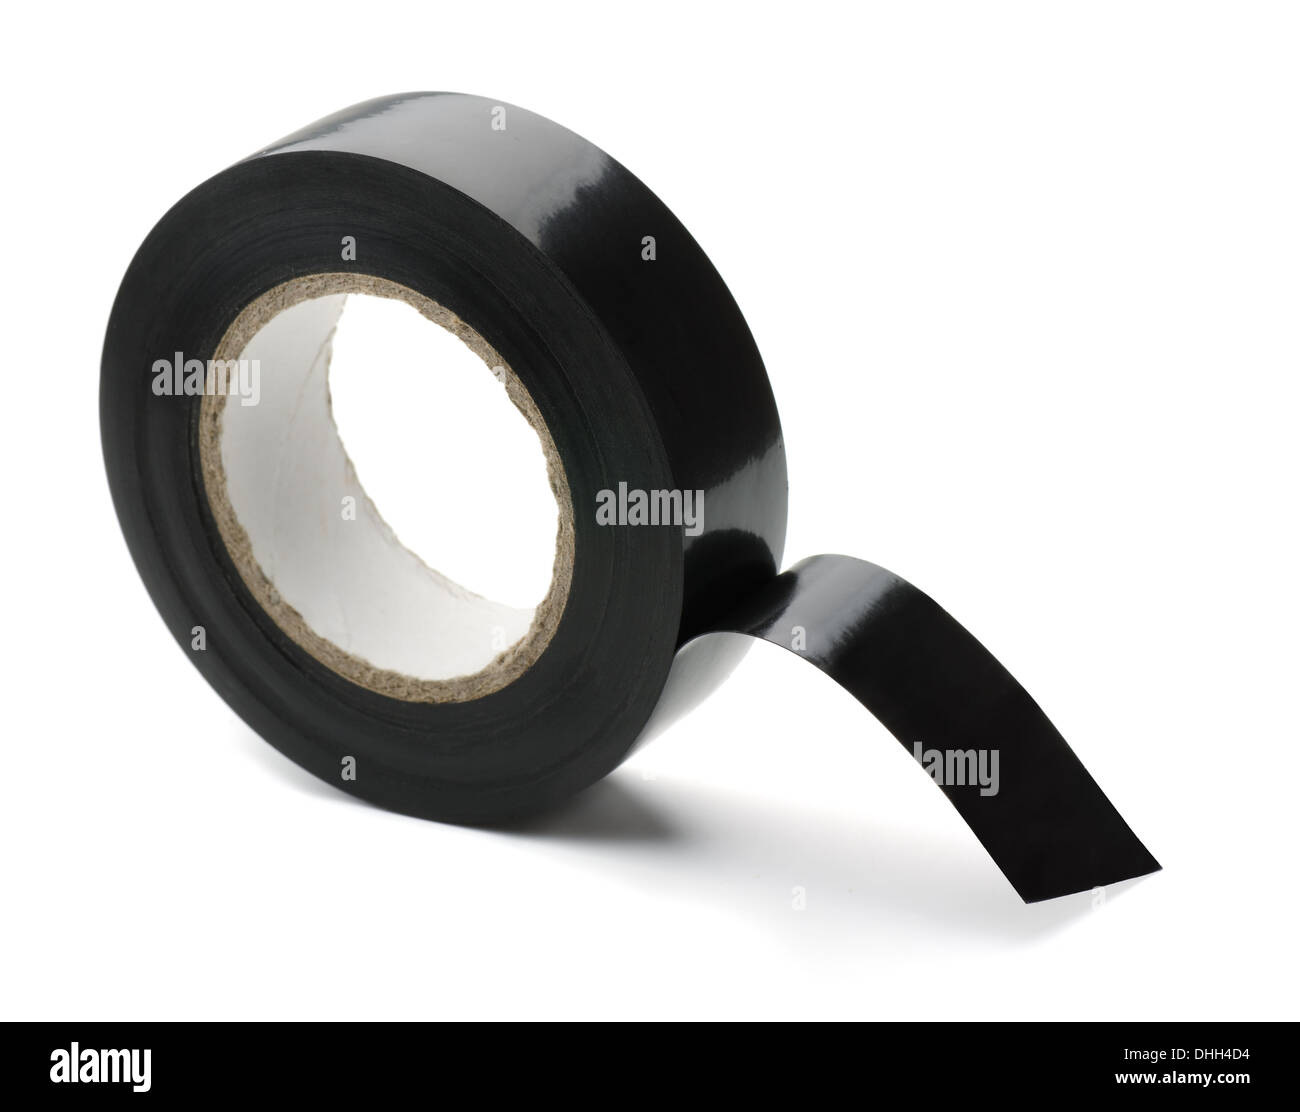 Rouleau de ruban adhésif en plastique noir isolated on white Banque D'Images